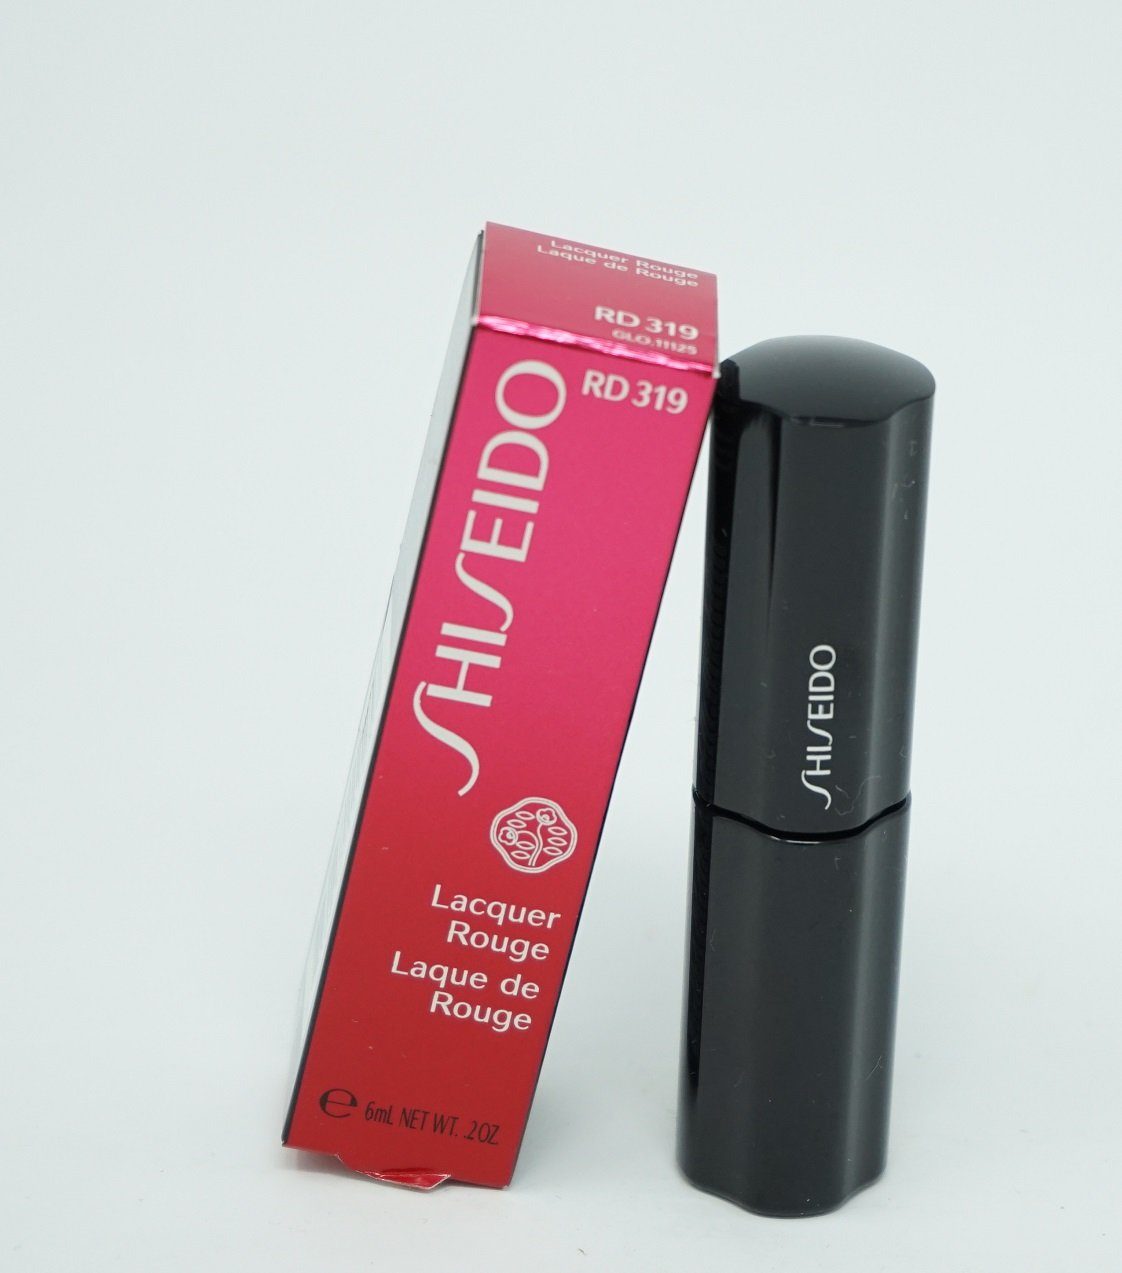 SHISEIDO Lipgloss Shiseido Lacquer Rouge Lipgloss 6ml RD 319